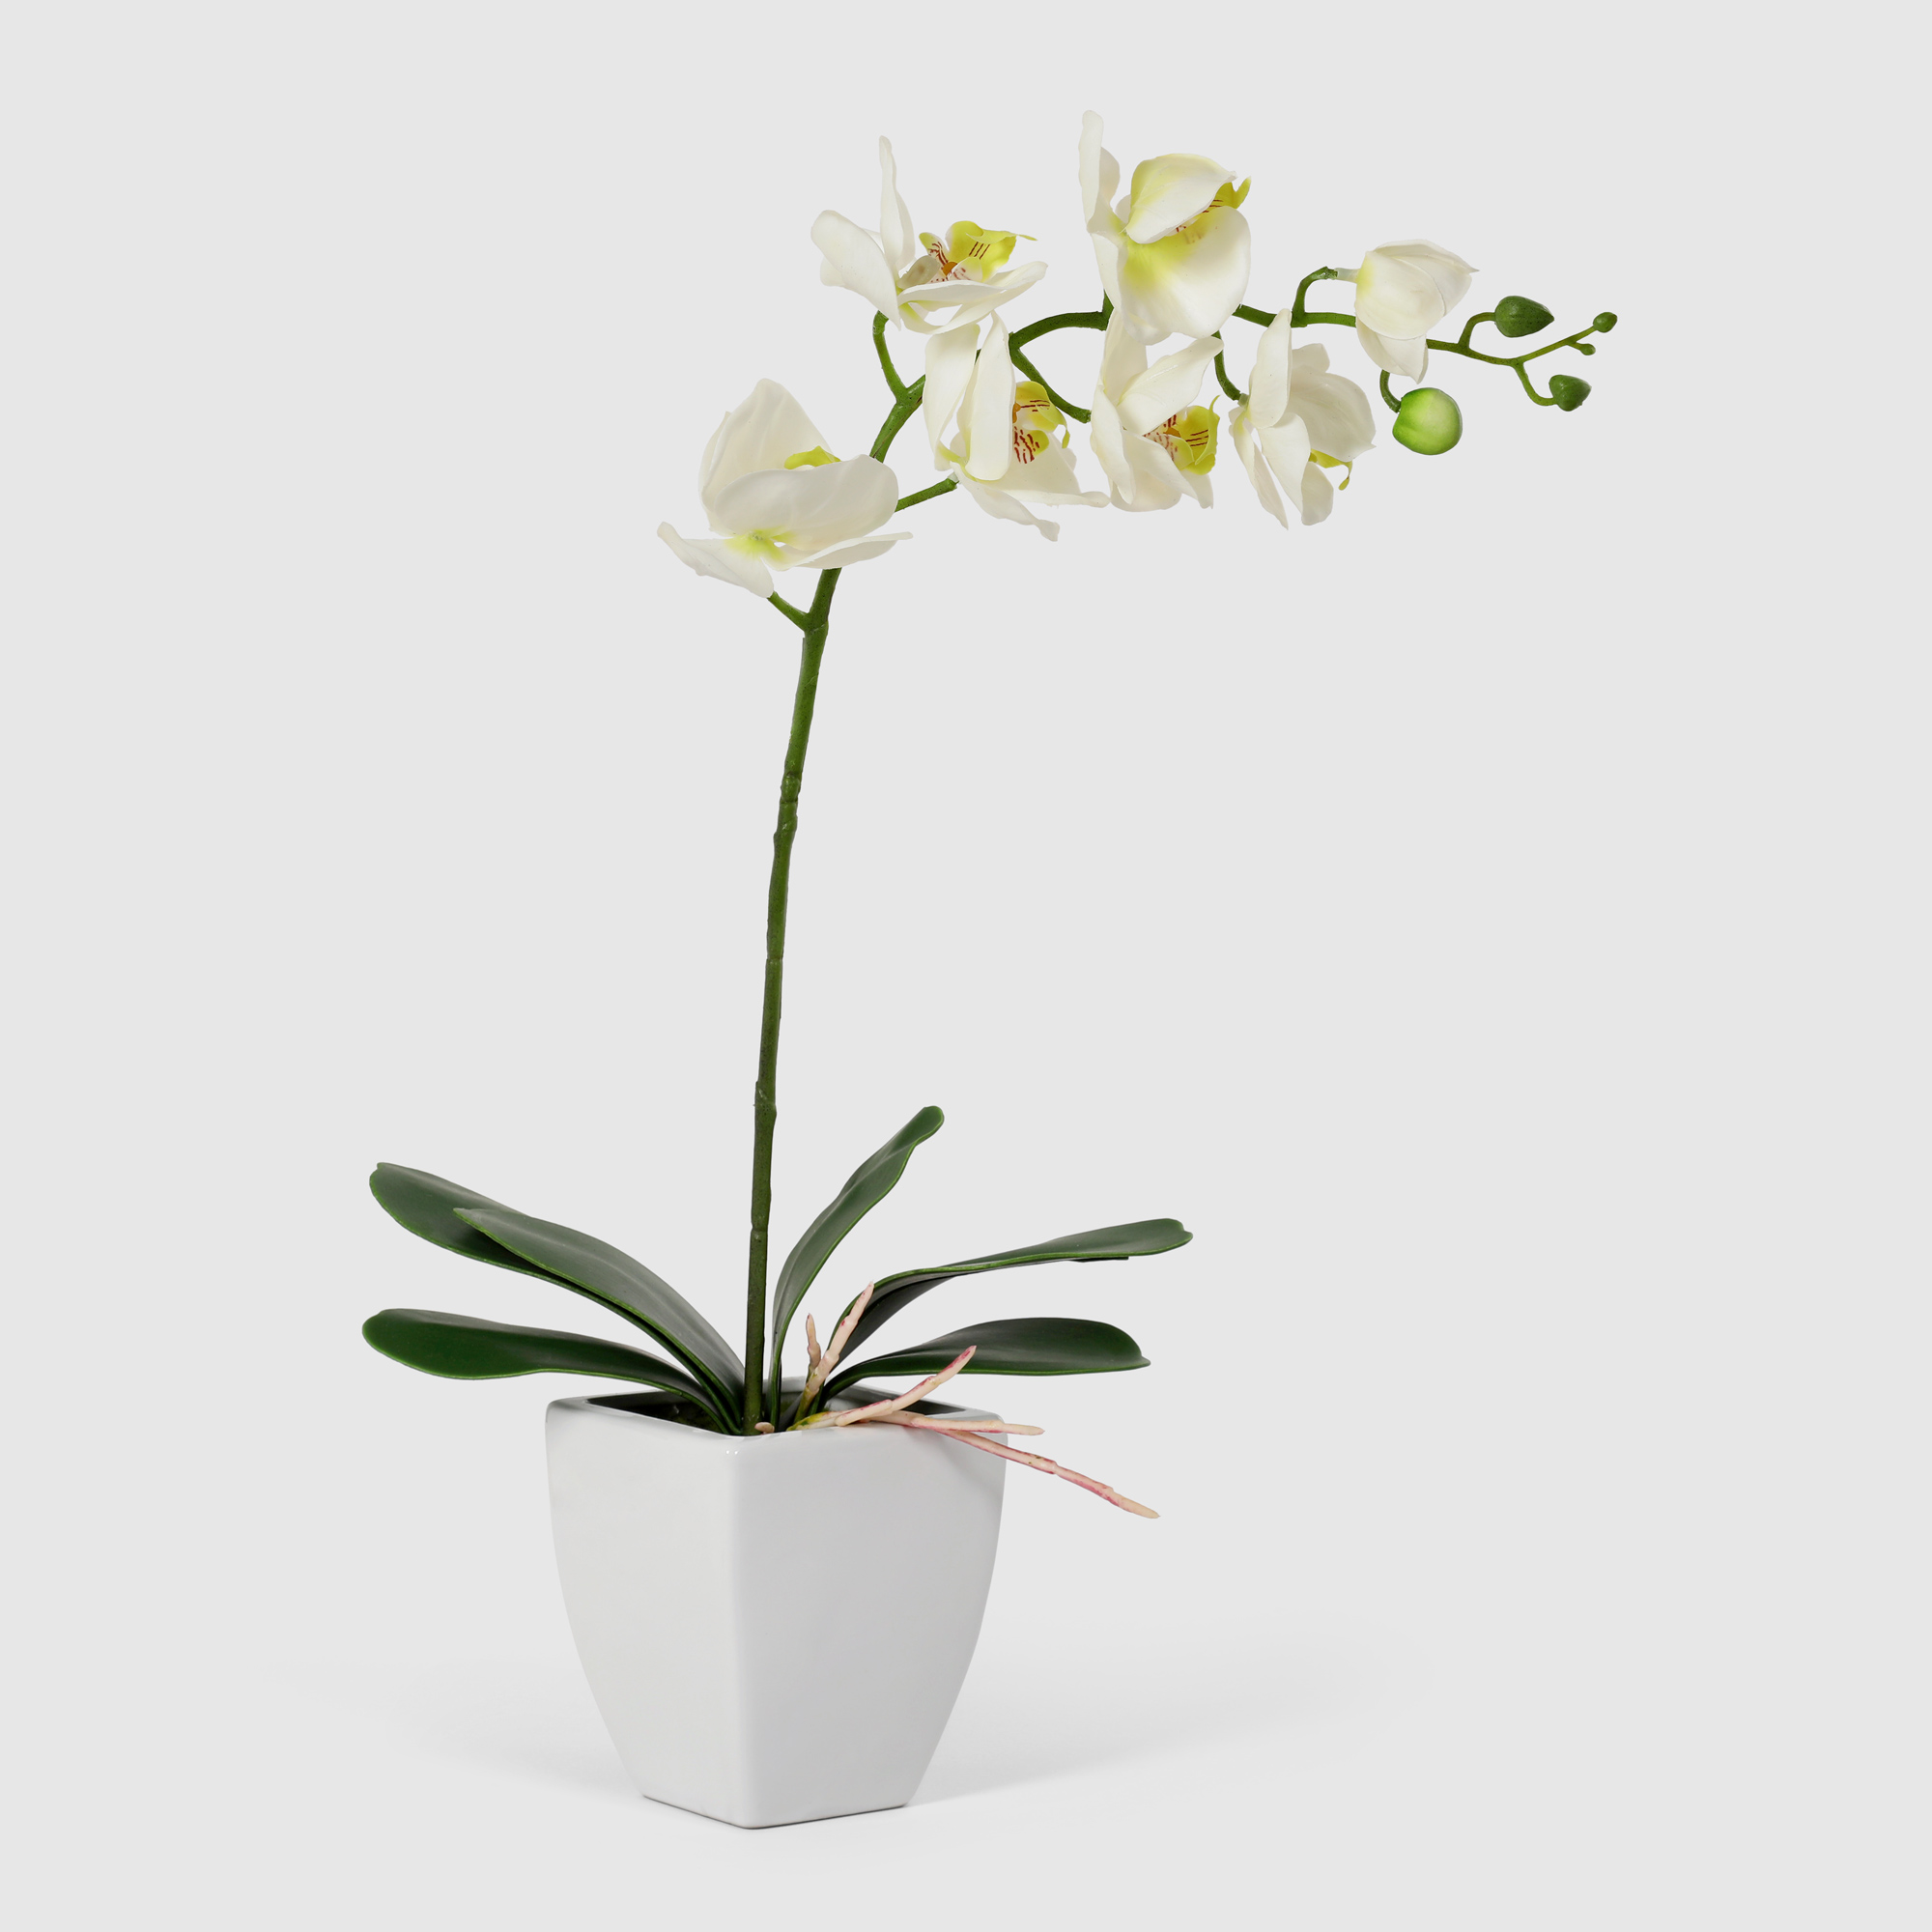 орхидея в белом кашпо конэко о 575 10159 185 60 см Орхидея Конэко-О 578_10159_185 в белом кашпо 60 см